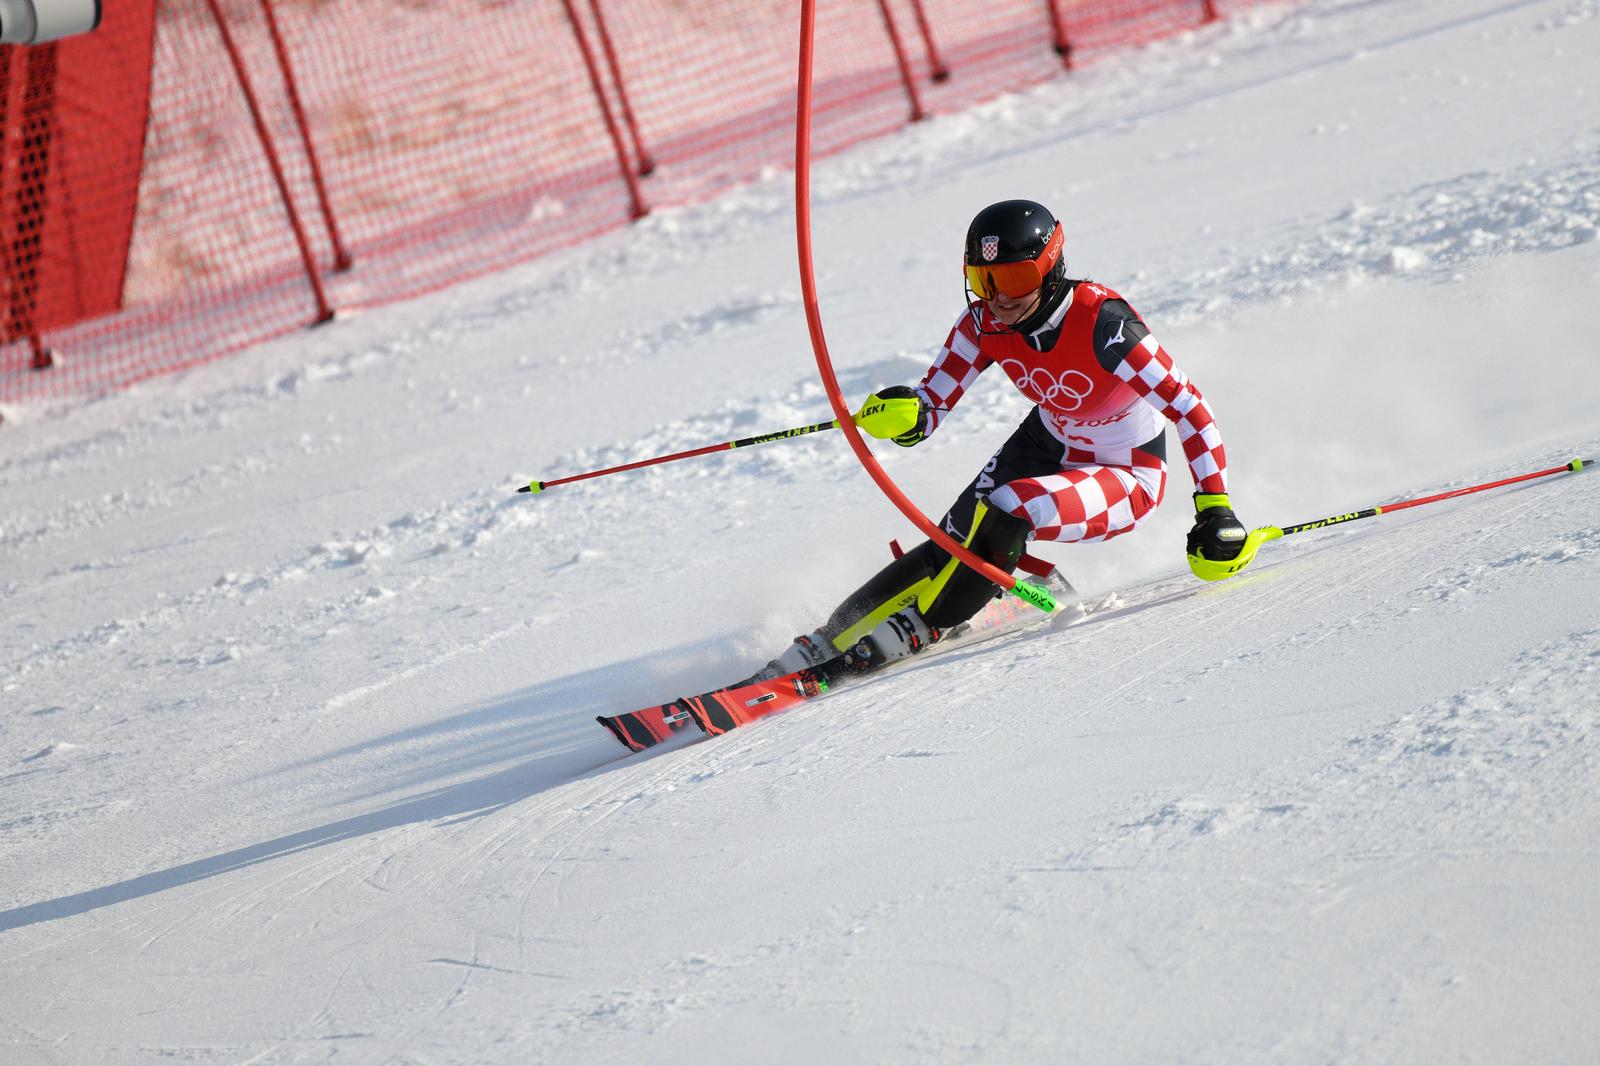 09.02.2022., Peking, Kina - Zimske olimpijske igre 2022. Slalom, prva voznja. Zrinka Ljutic   Photo: Jaki Franja/PIXSELL